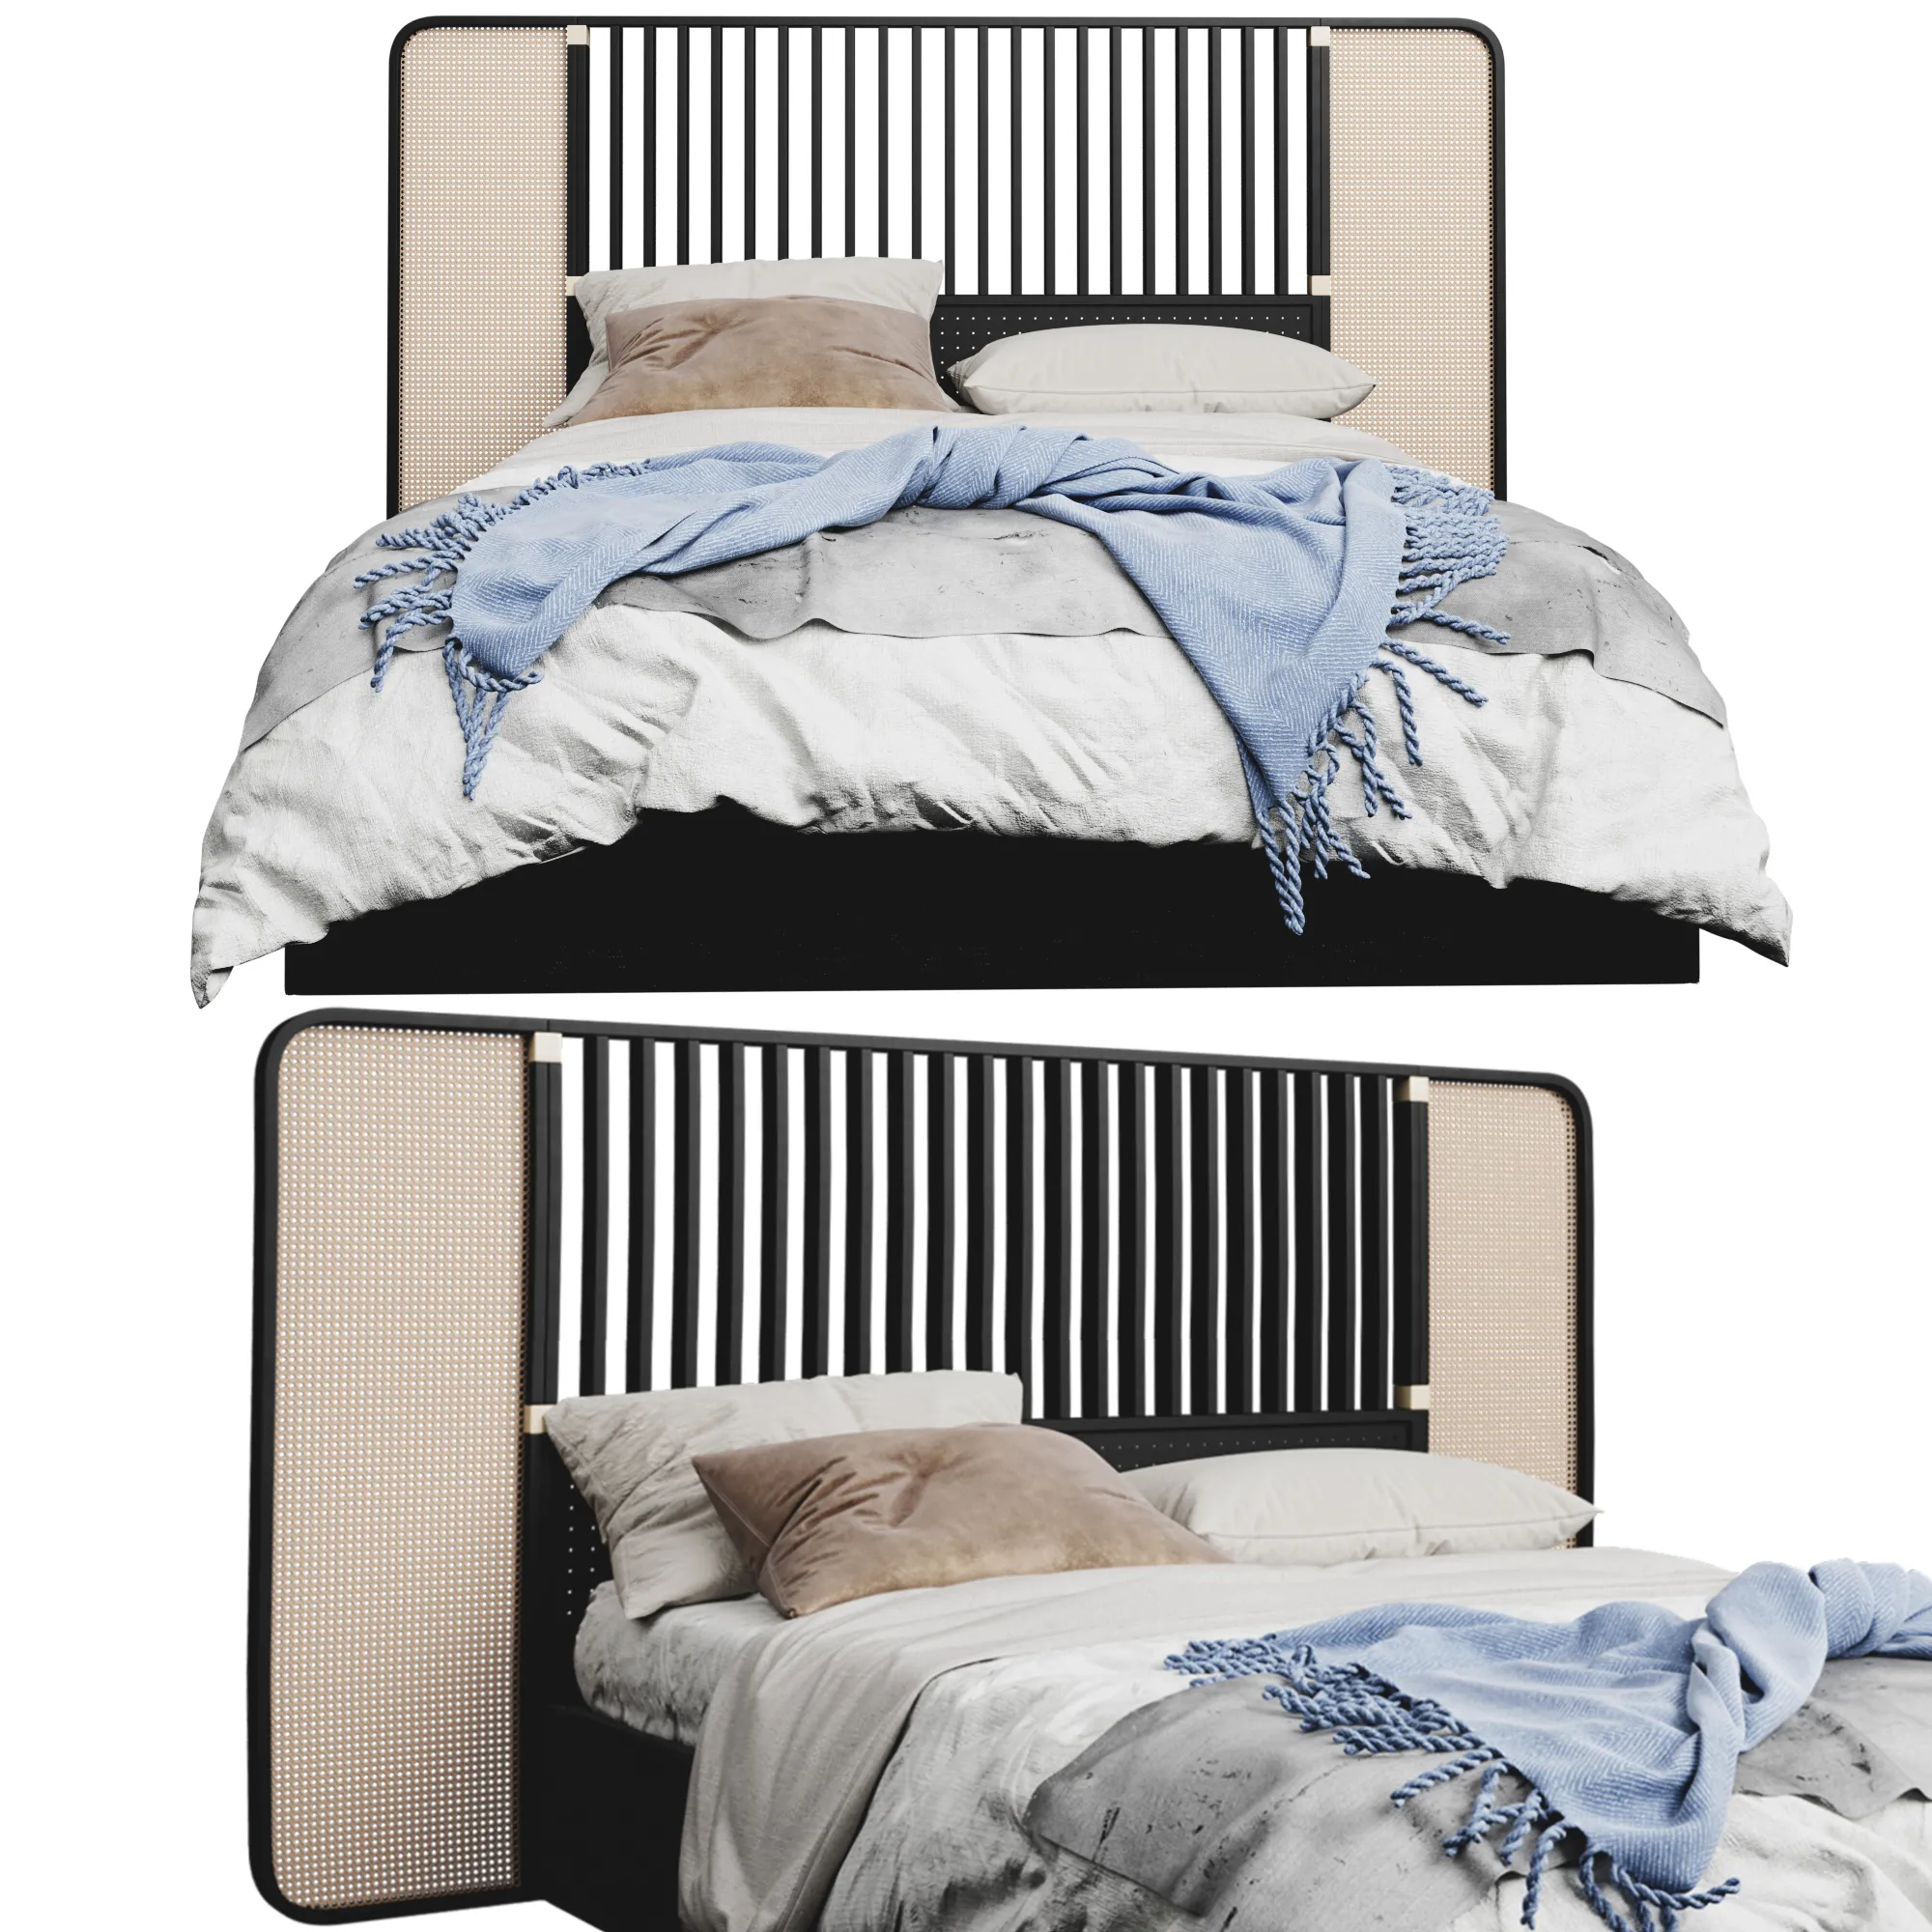 Wiener (GTV) design – OttoW bed (max, obj) – 3842